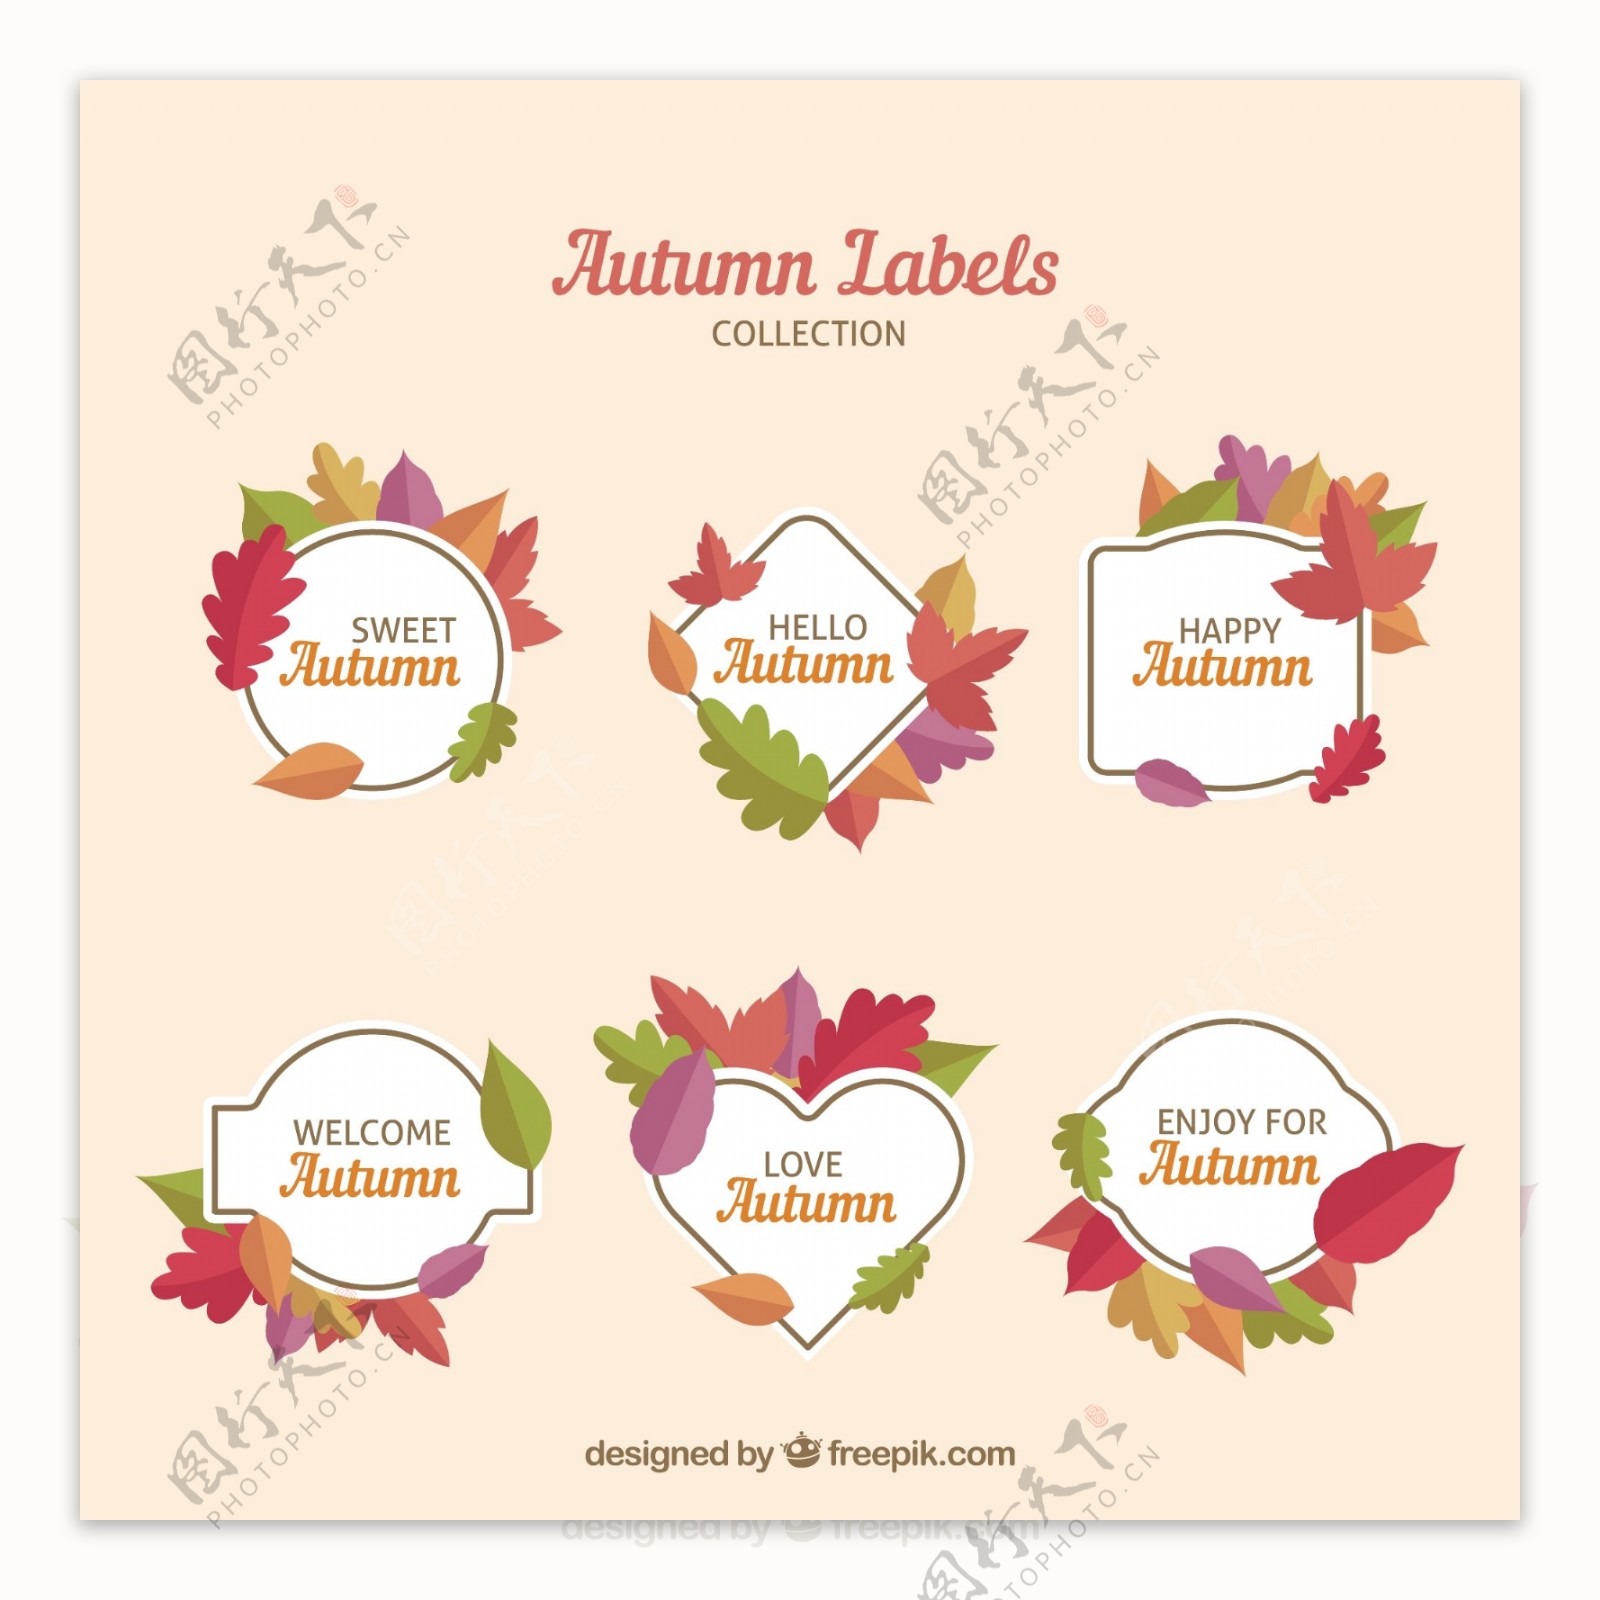 与平面设计丰富多彩的秋天的标签设置